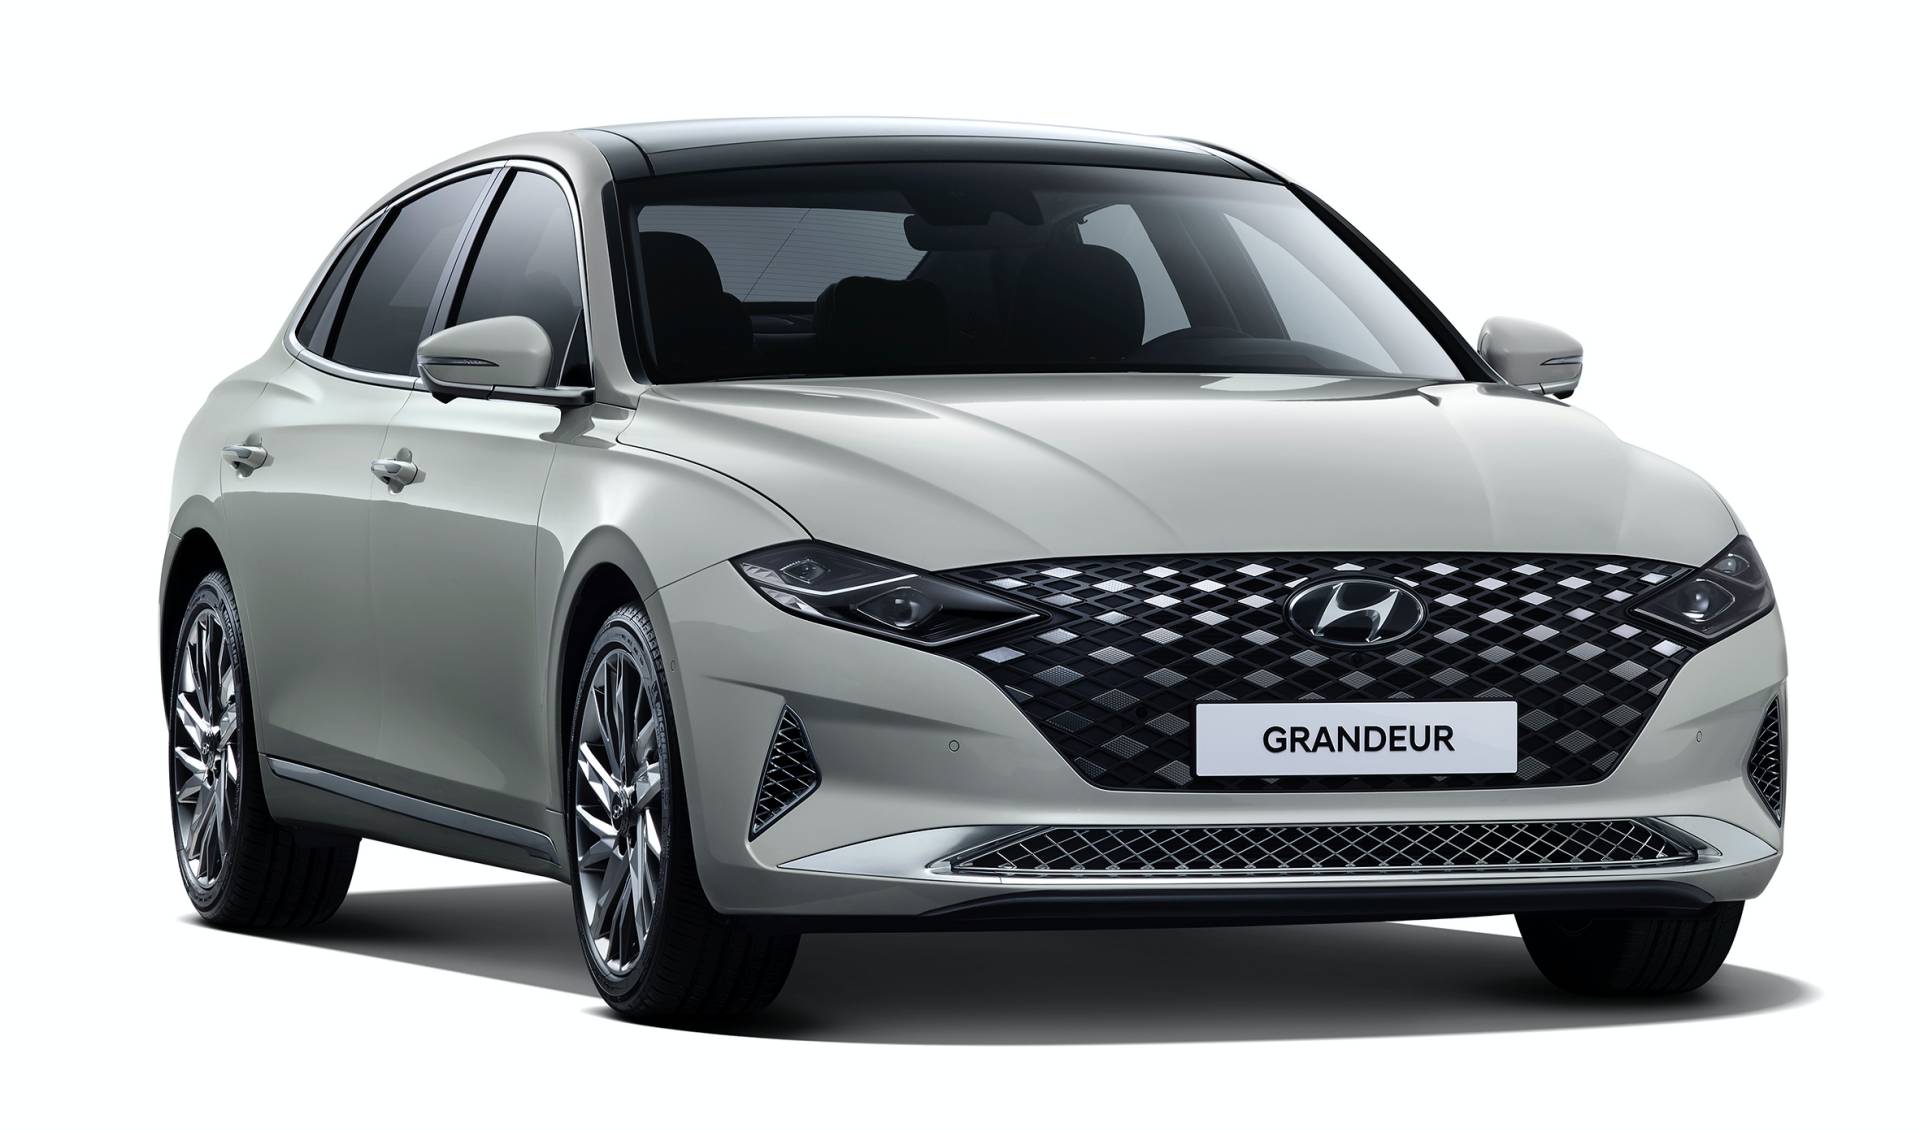 2020-Hyundai-Grandeur-Korea-spec-2.jpg